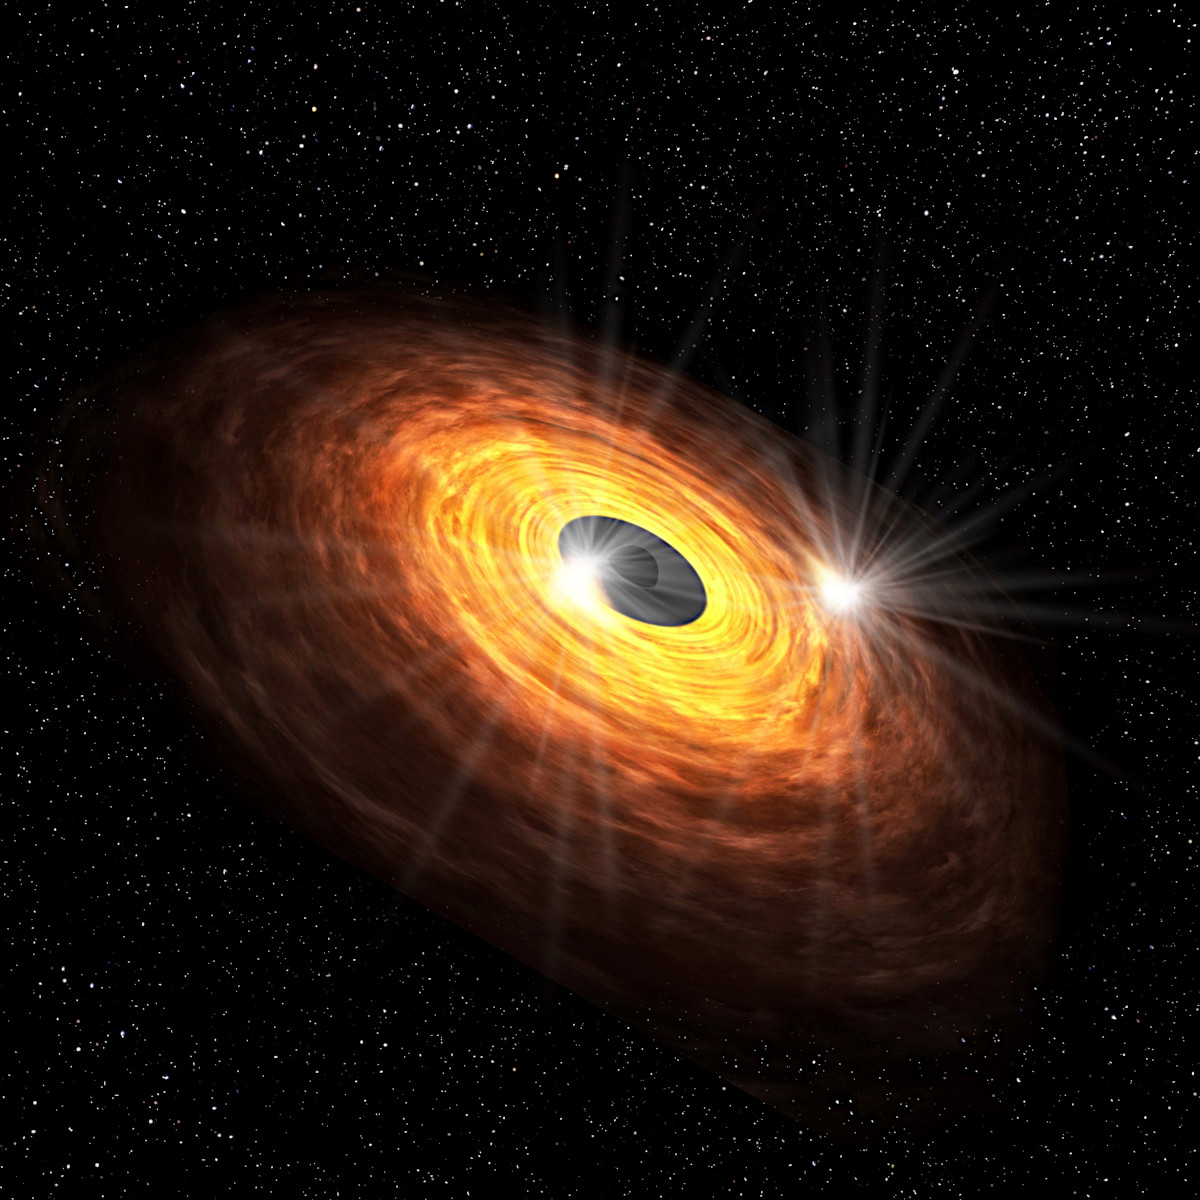 天の川銀河の中心にある超巨大ブラックホールの“瞬き”をとらえた！ | アストロピクス